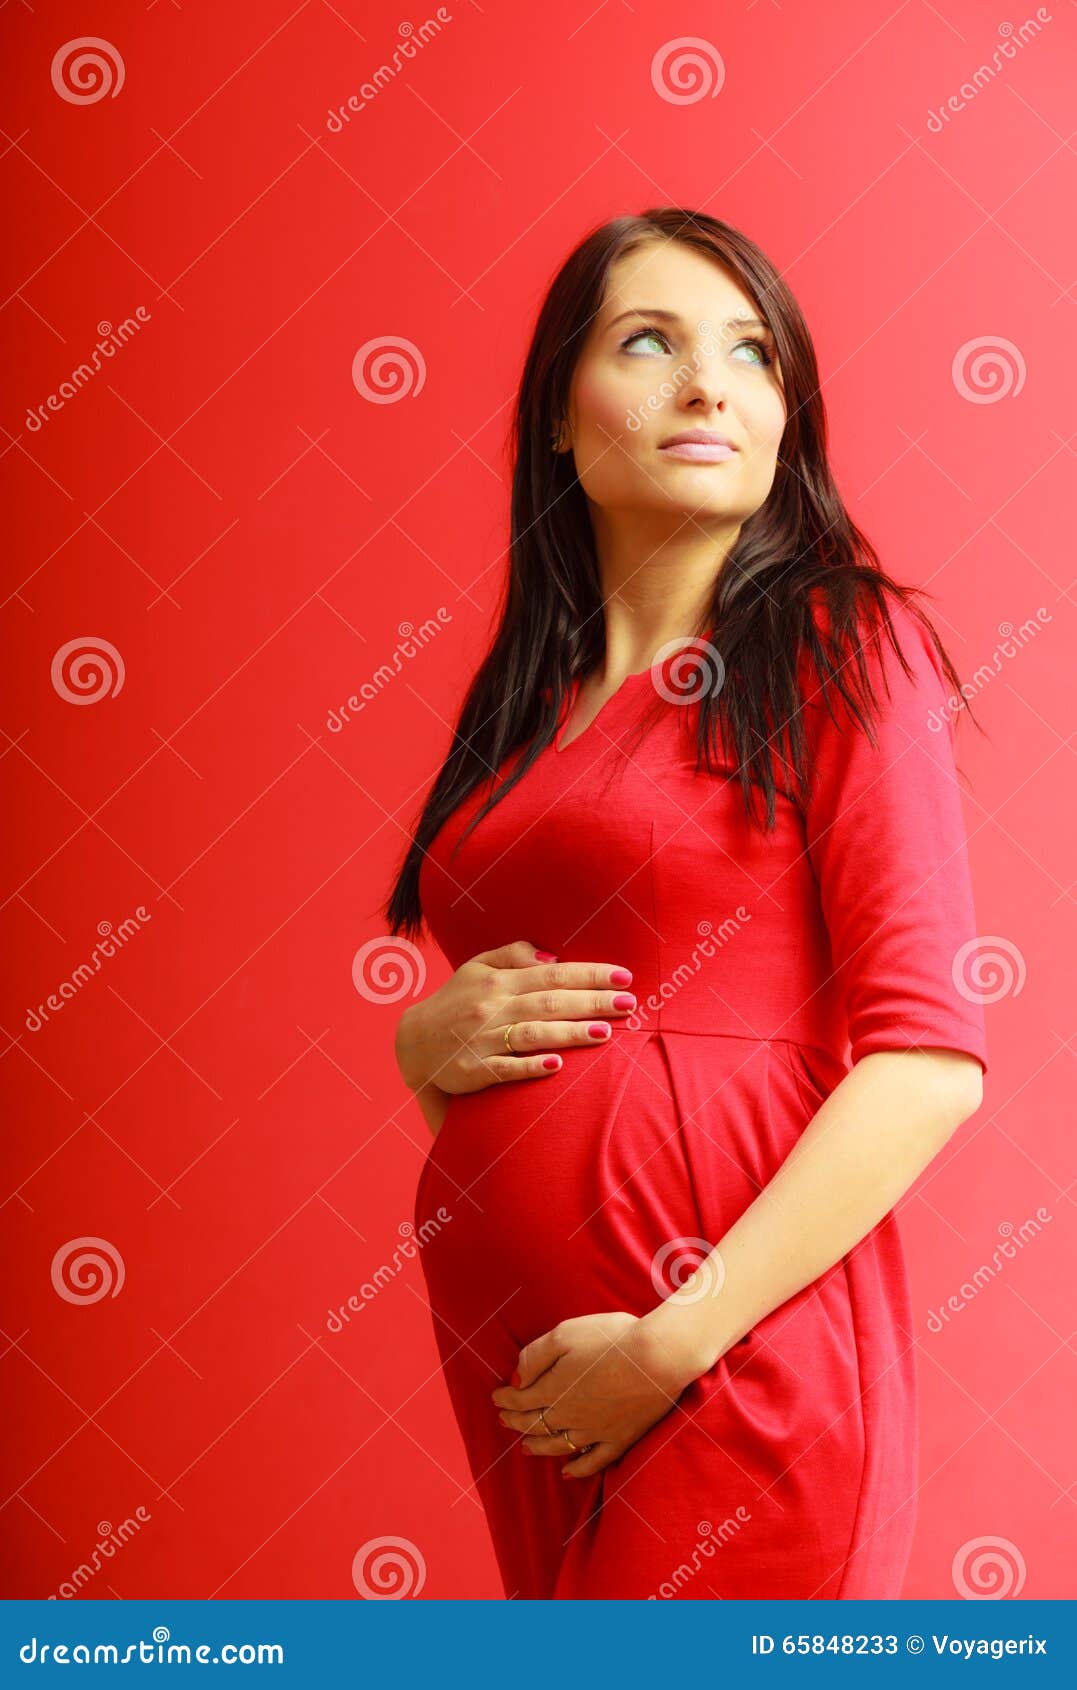 Primer En La Panza De La Mujer Embarazada Imagen De Archivo Imagen De Amor Nacimiento 65848233 9923